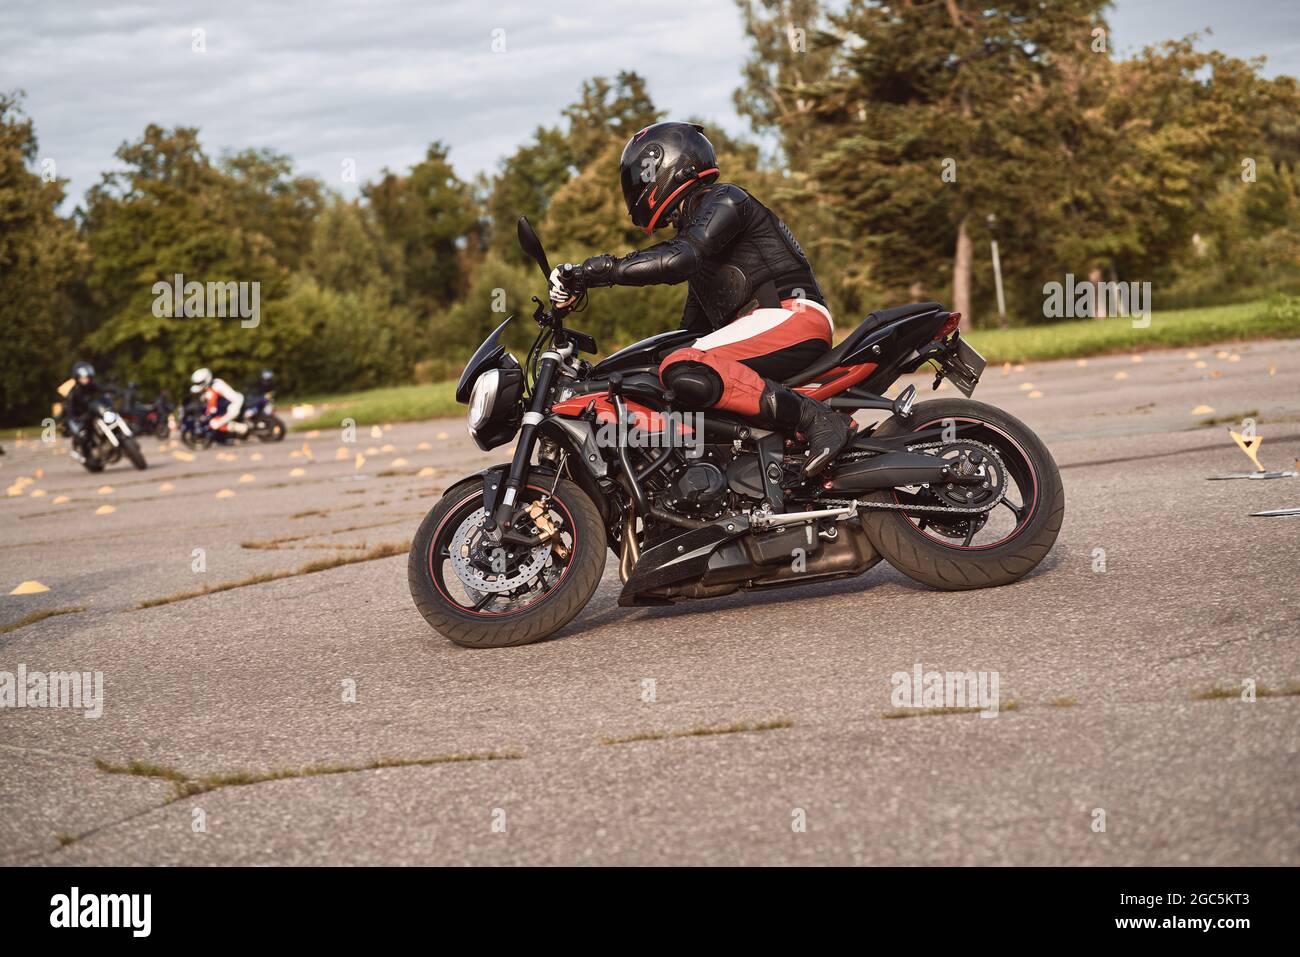 Un motard masculin portant un costume de course en cuir de protection avec  une moto ou une moto rouge sur une route à ciel ouvert. L'image est prise  en mode HDR et